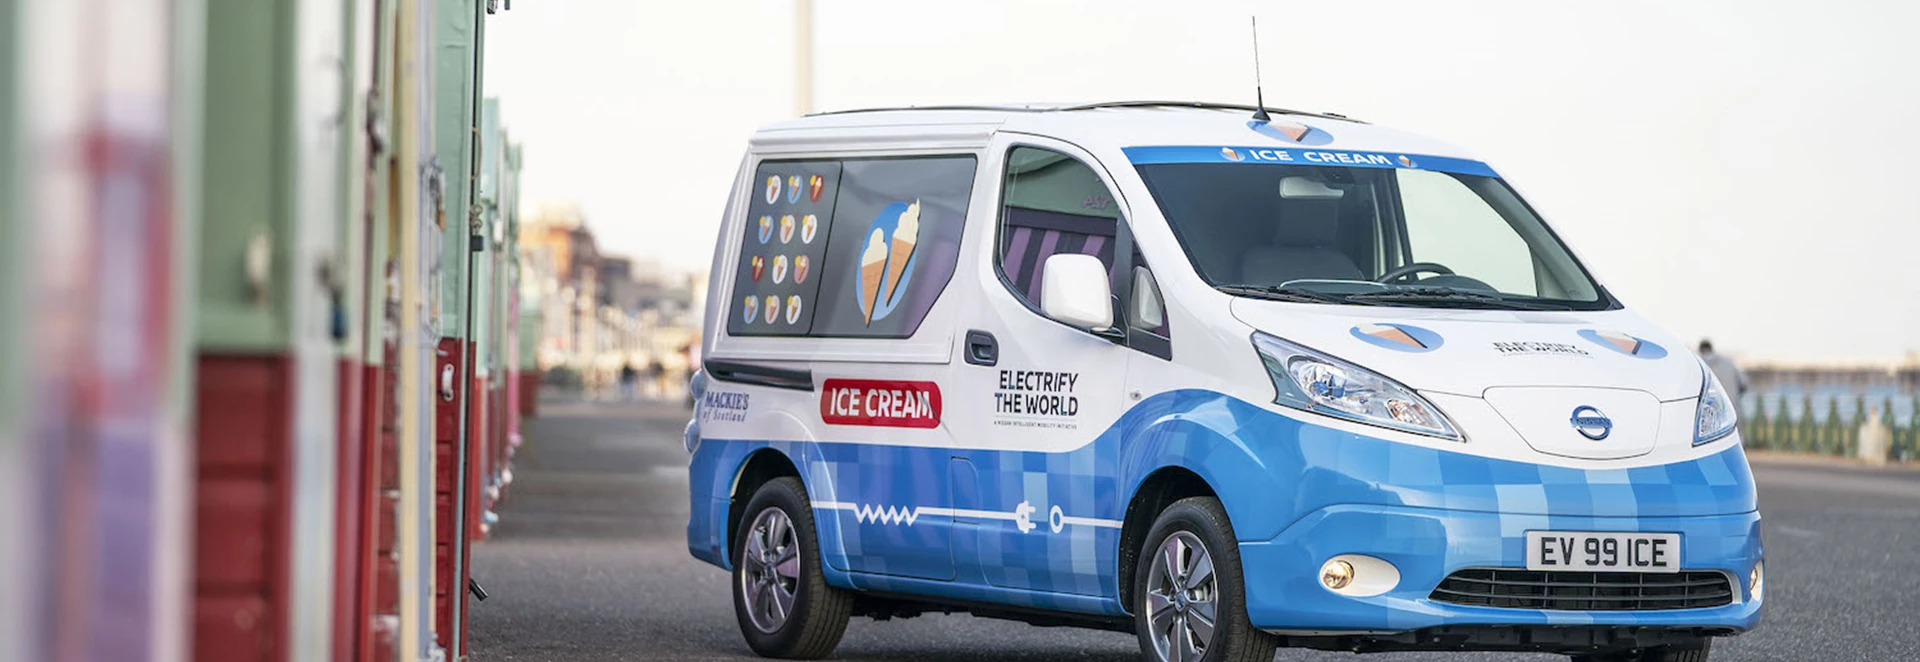 Nissan reveals new zero-emission ice cream van concept